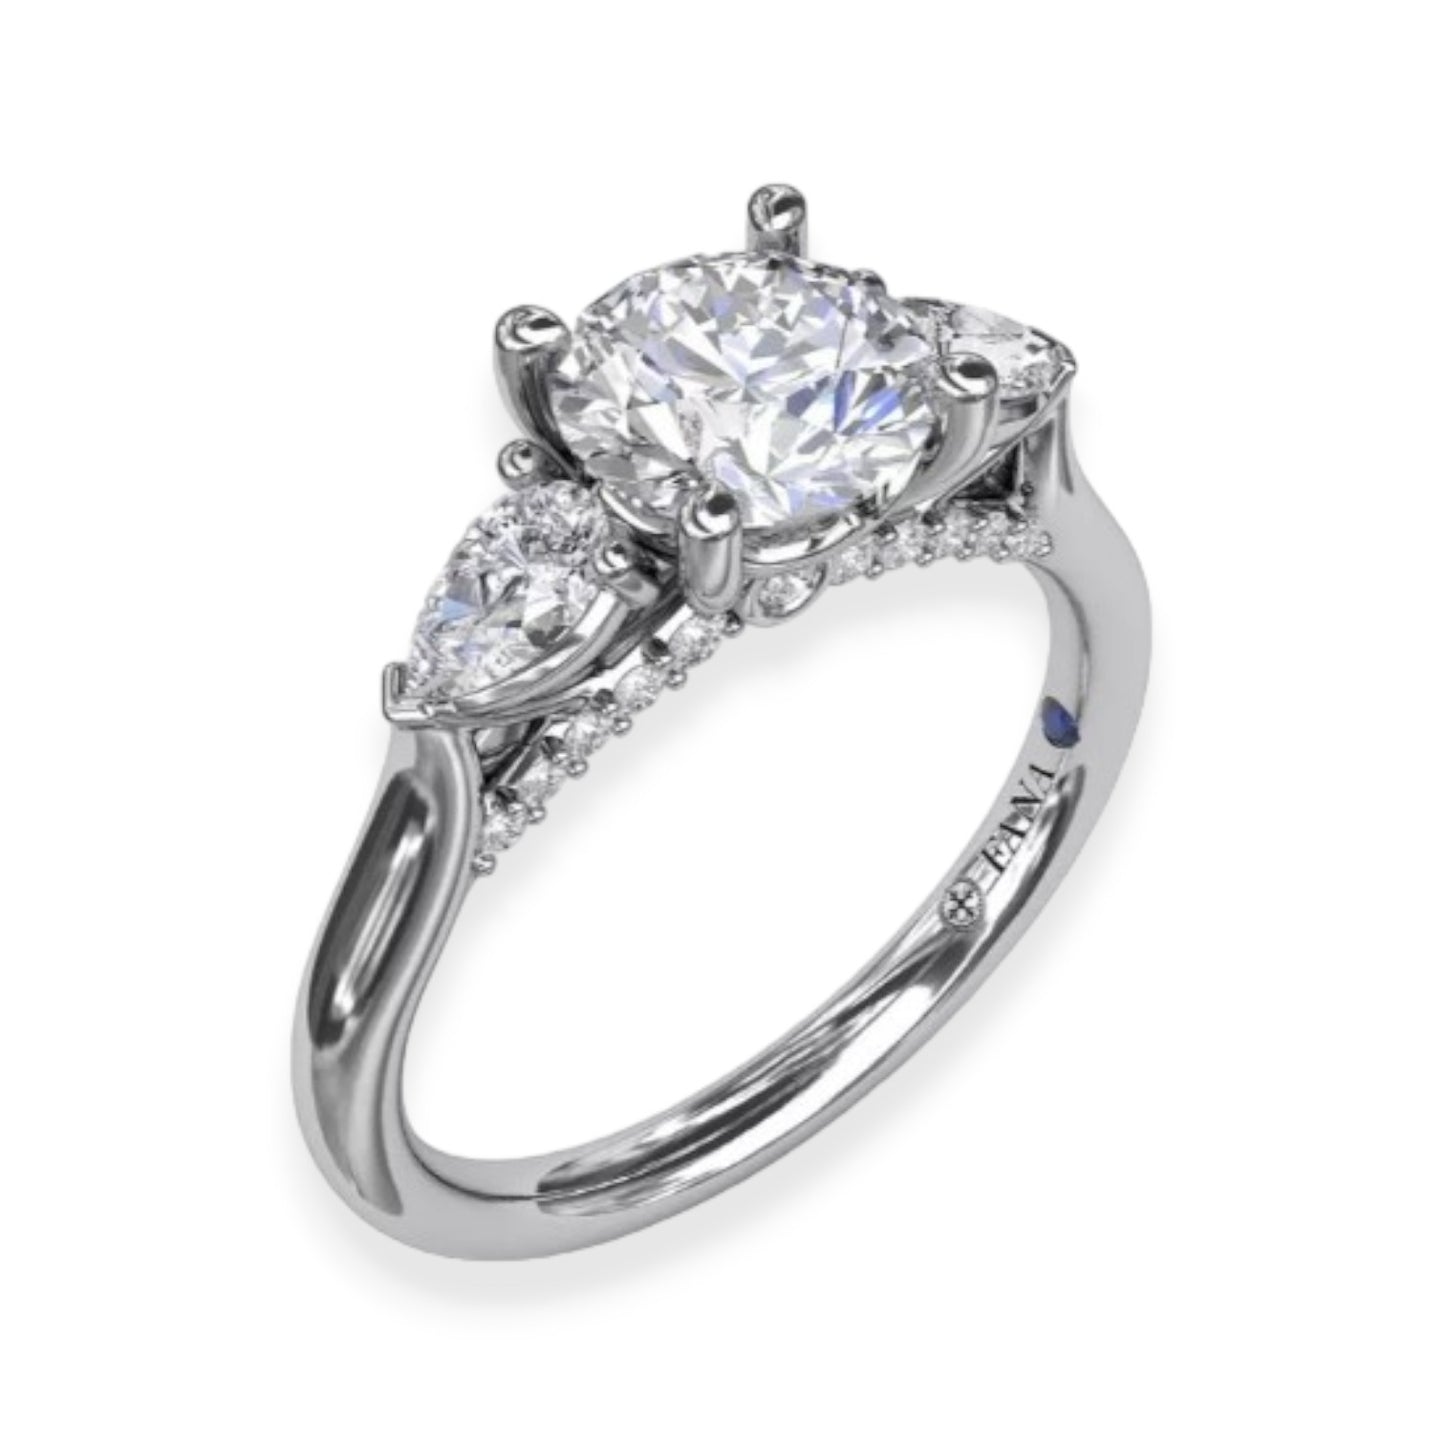 White Gold Three Stone Diamond Engagement Ring